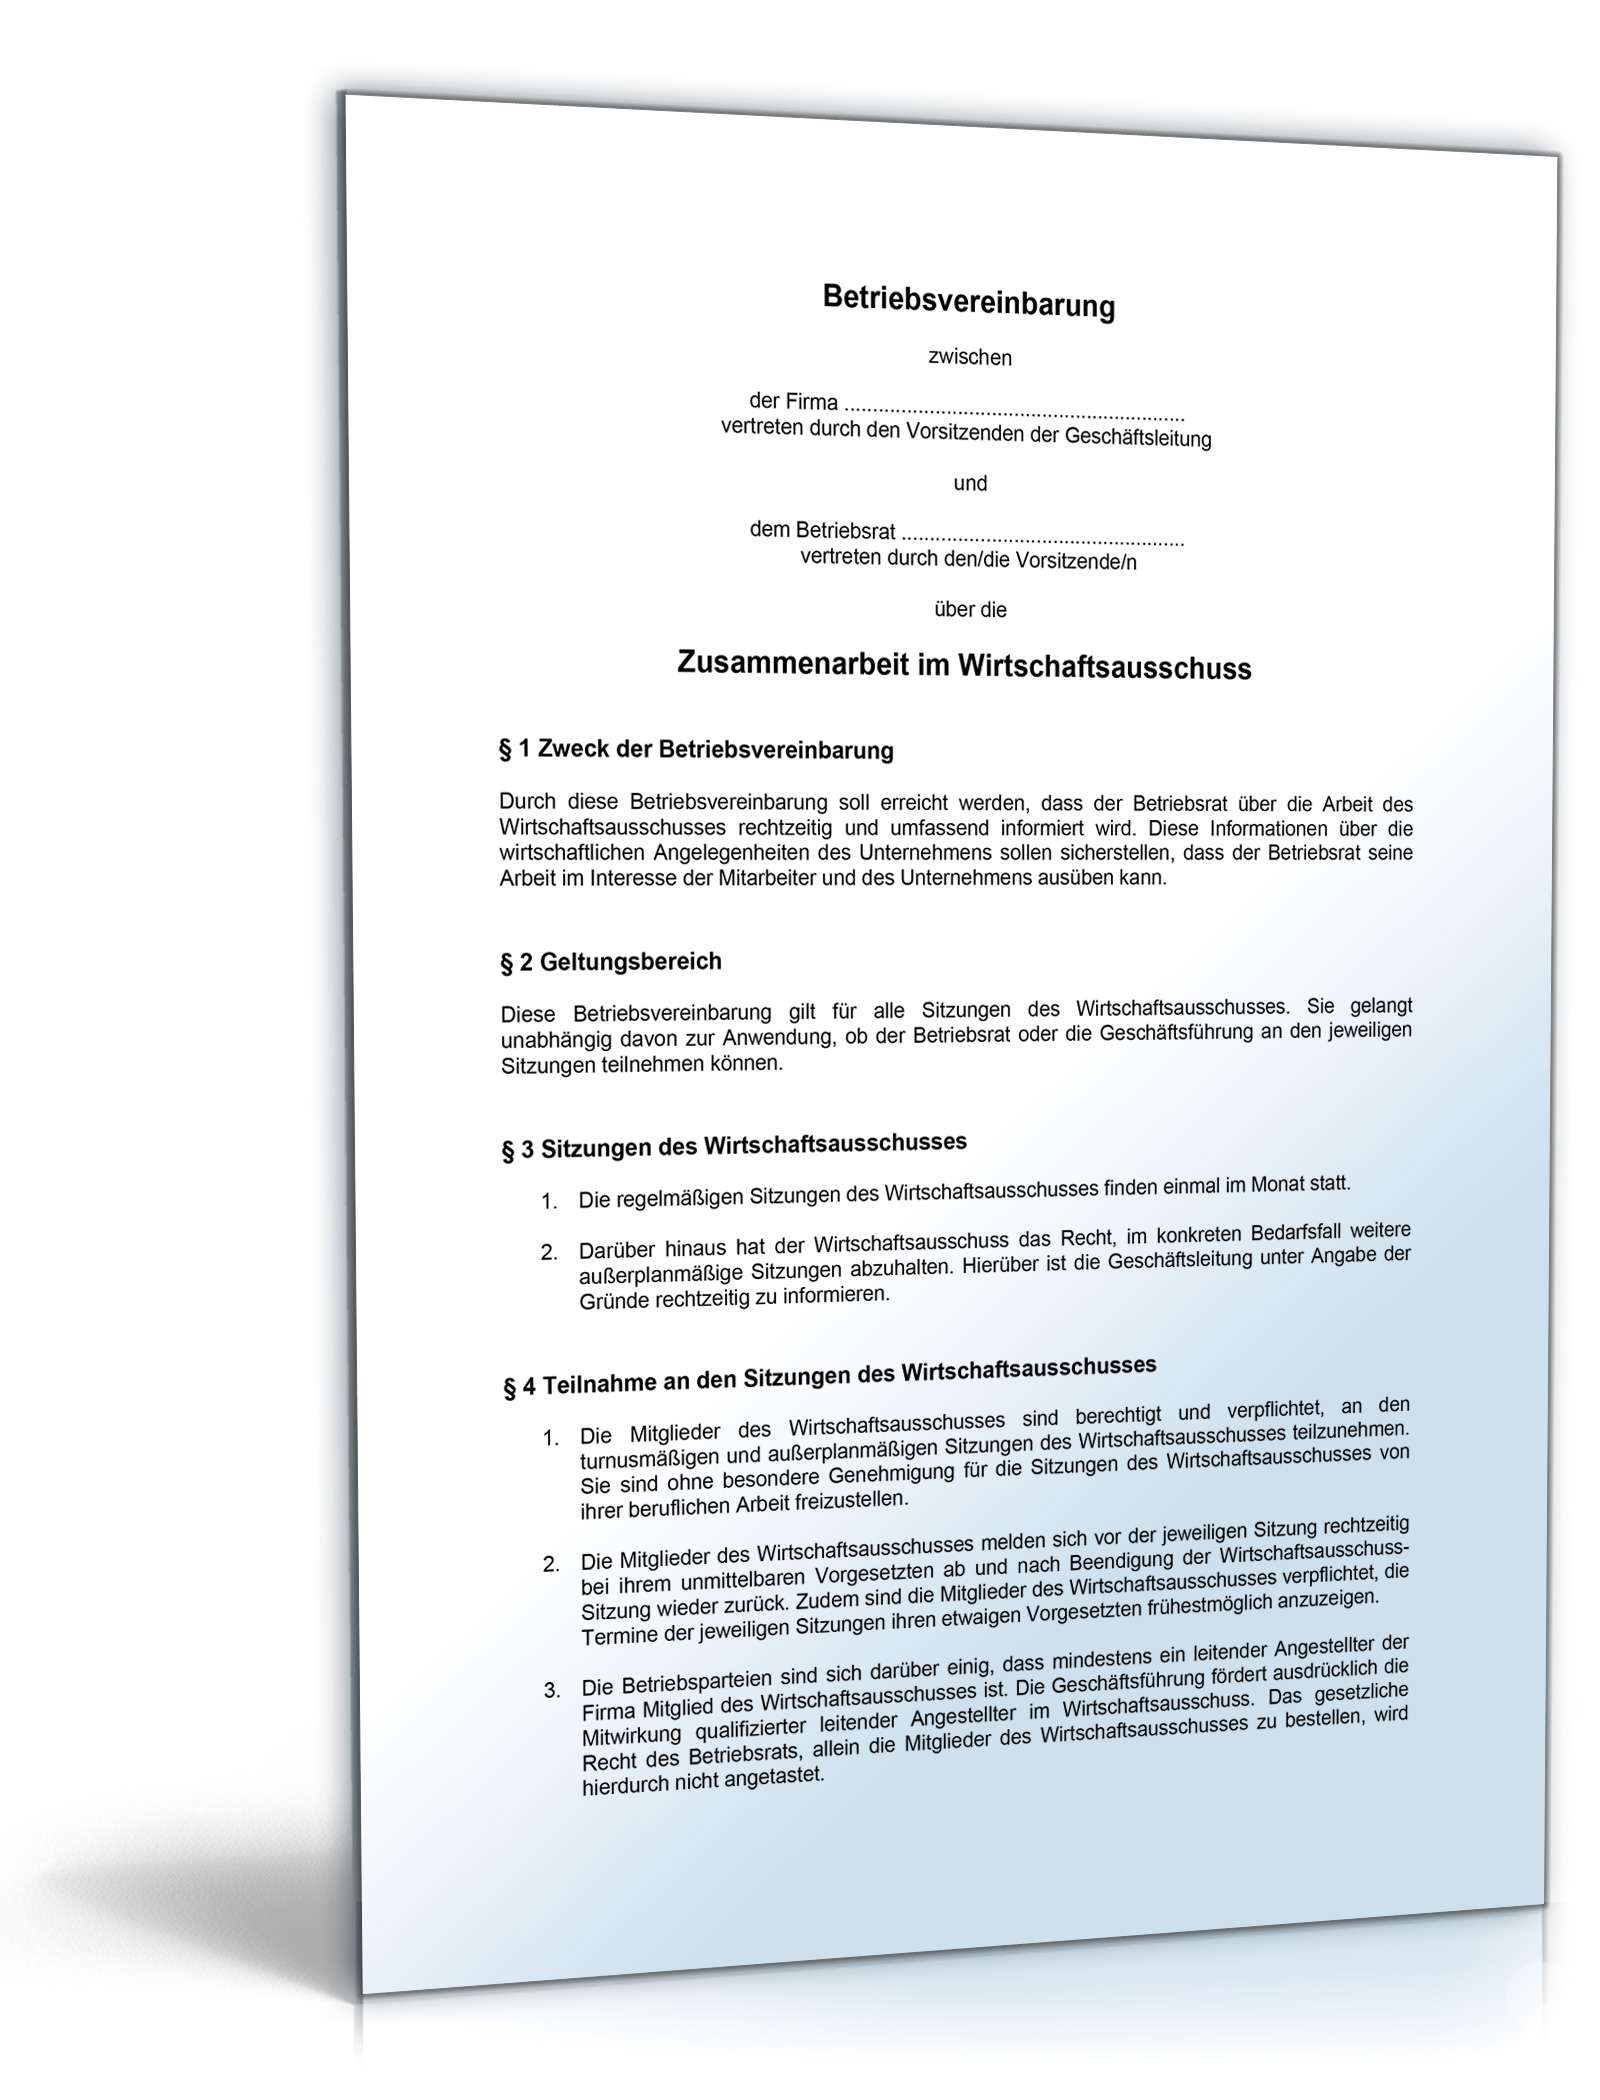 Hauptbild des Produkts: Betriebsvereinbarung über die Zusammenarbeit im Wirtschaftsausschuss